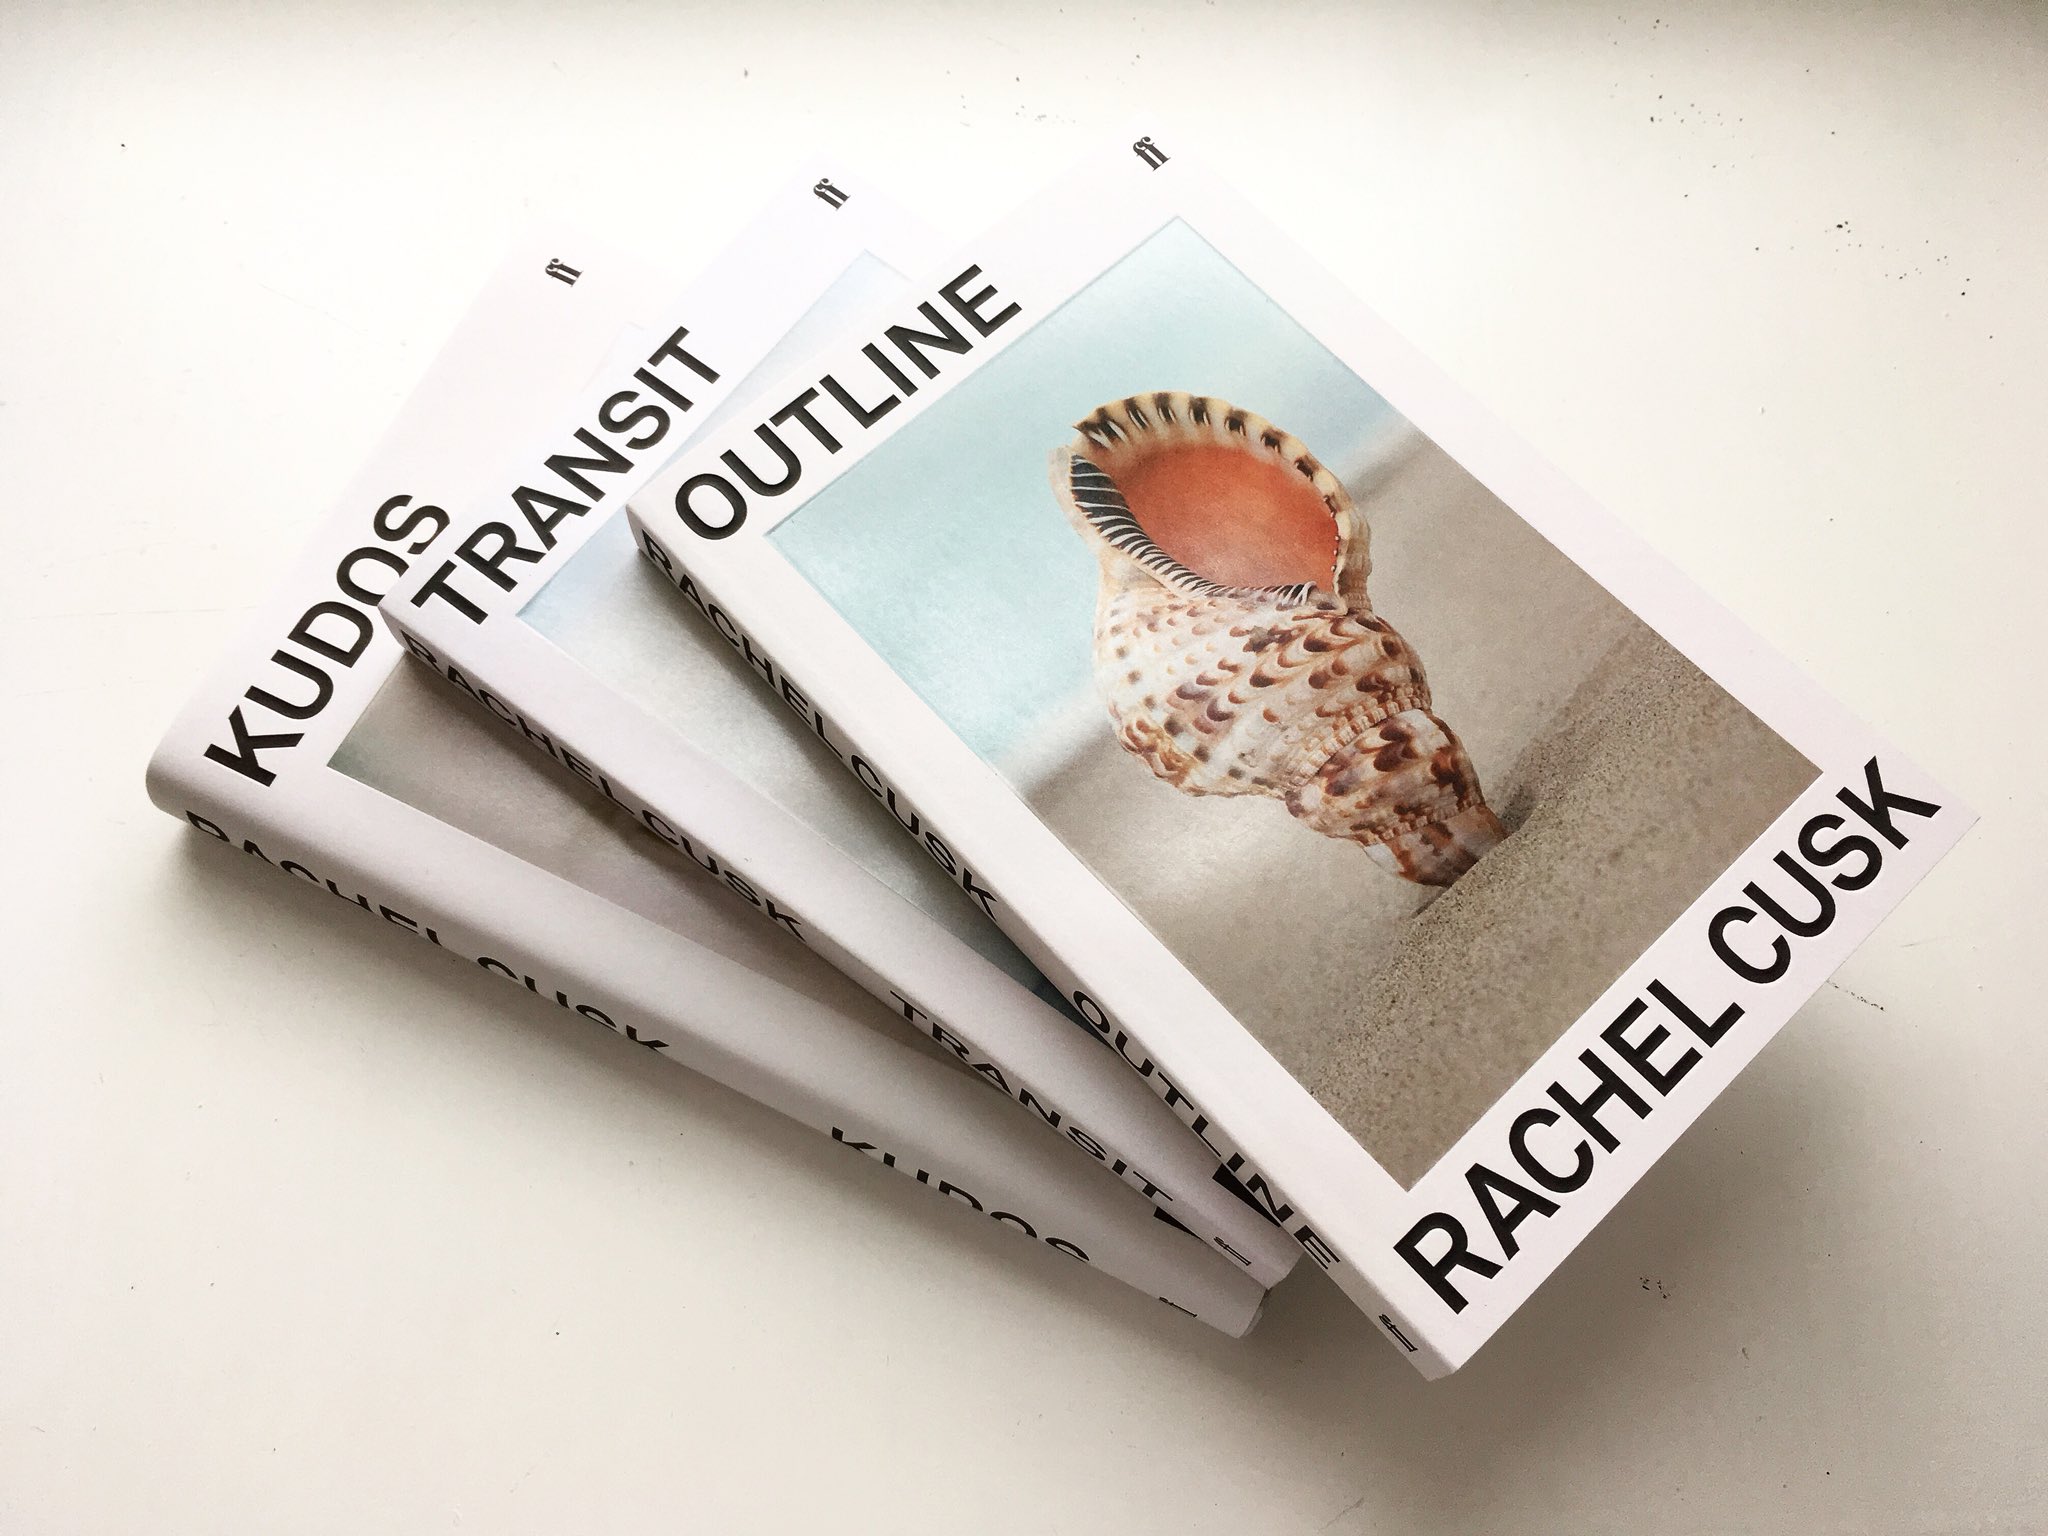 BOOK: Rachel Cusk, The Outline Trilogy